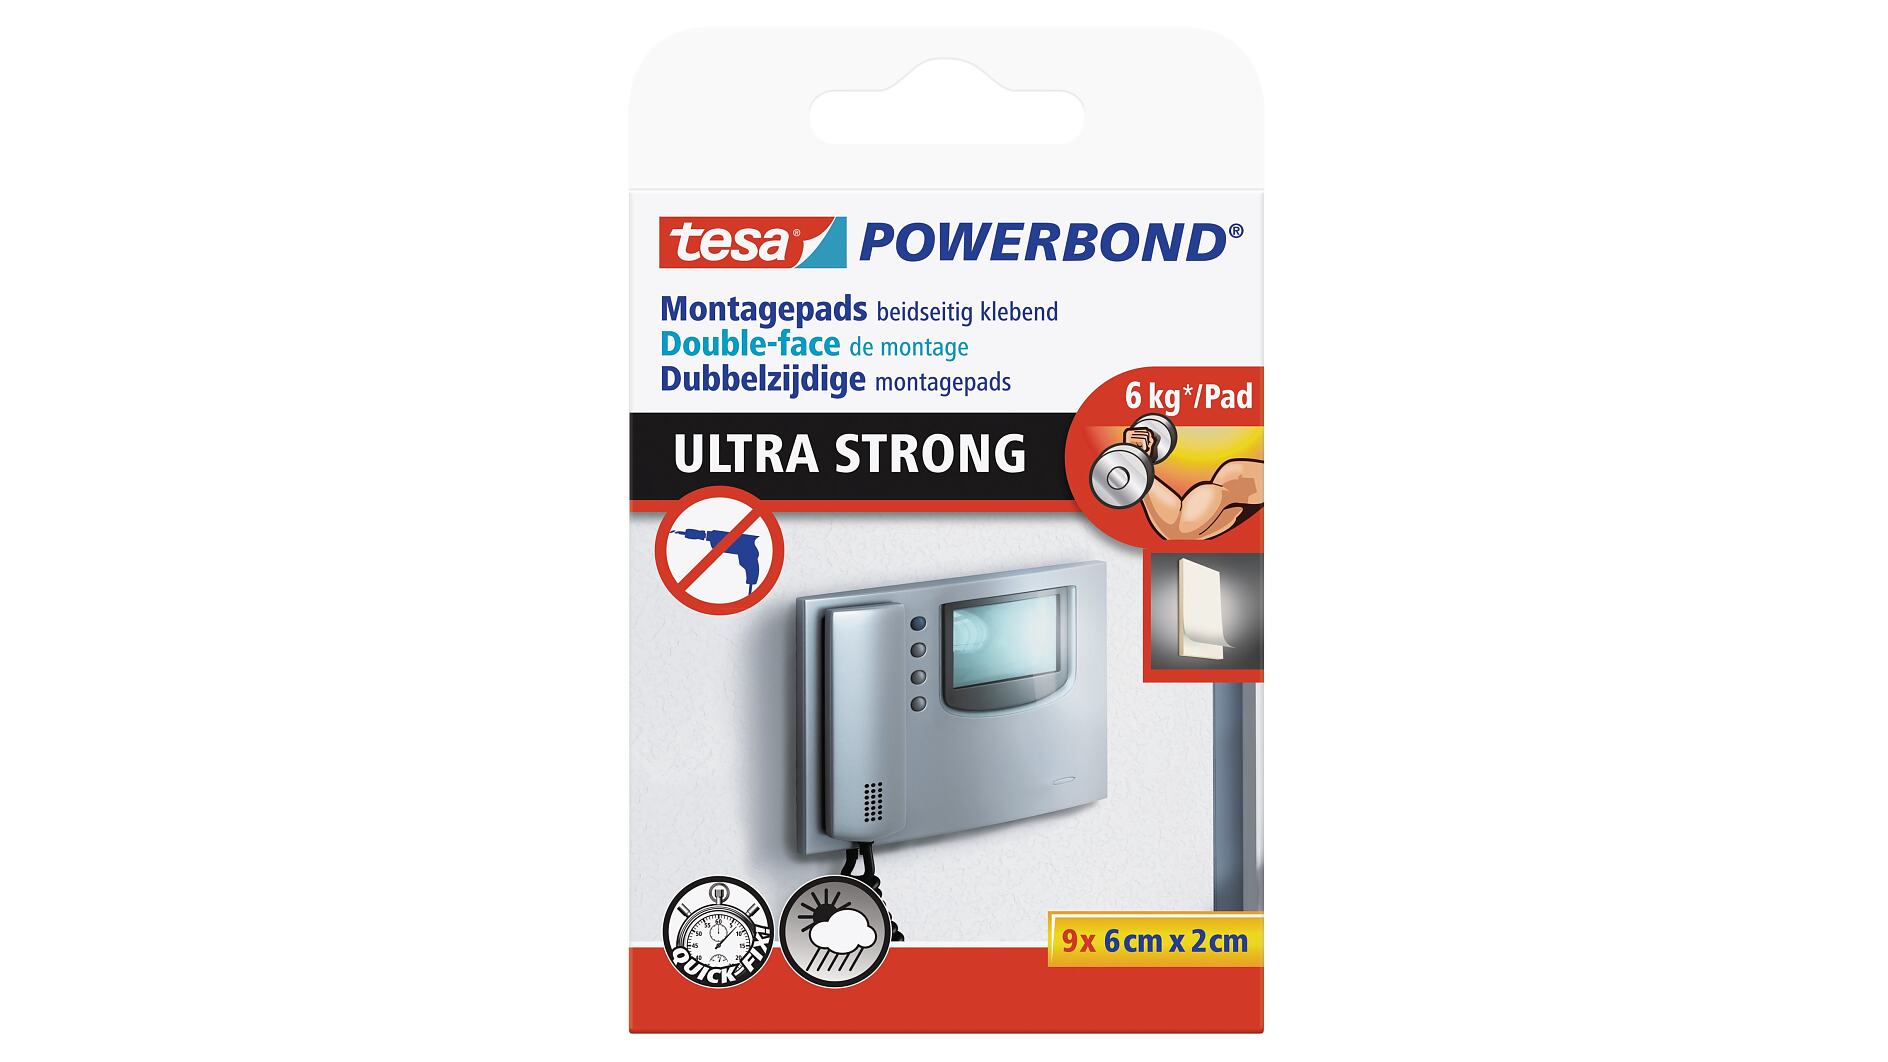 tesa Powerbond® ULTRA STRONG PADS - tesa